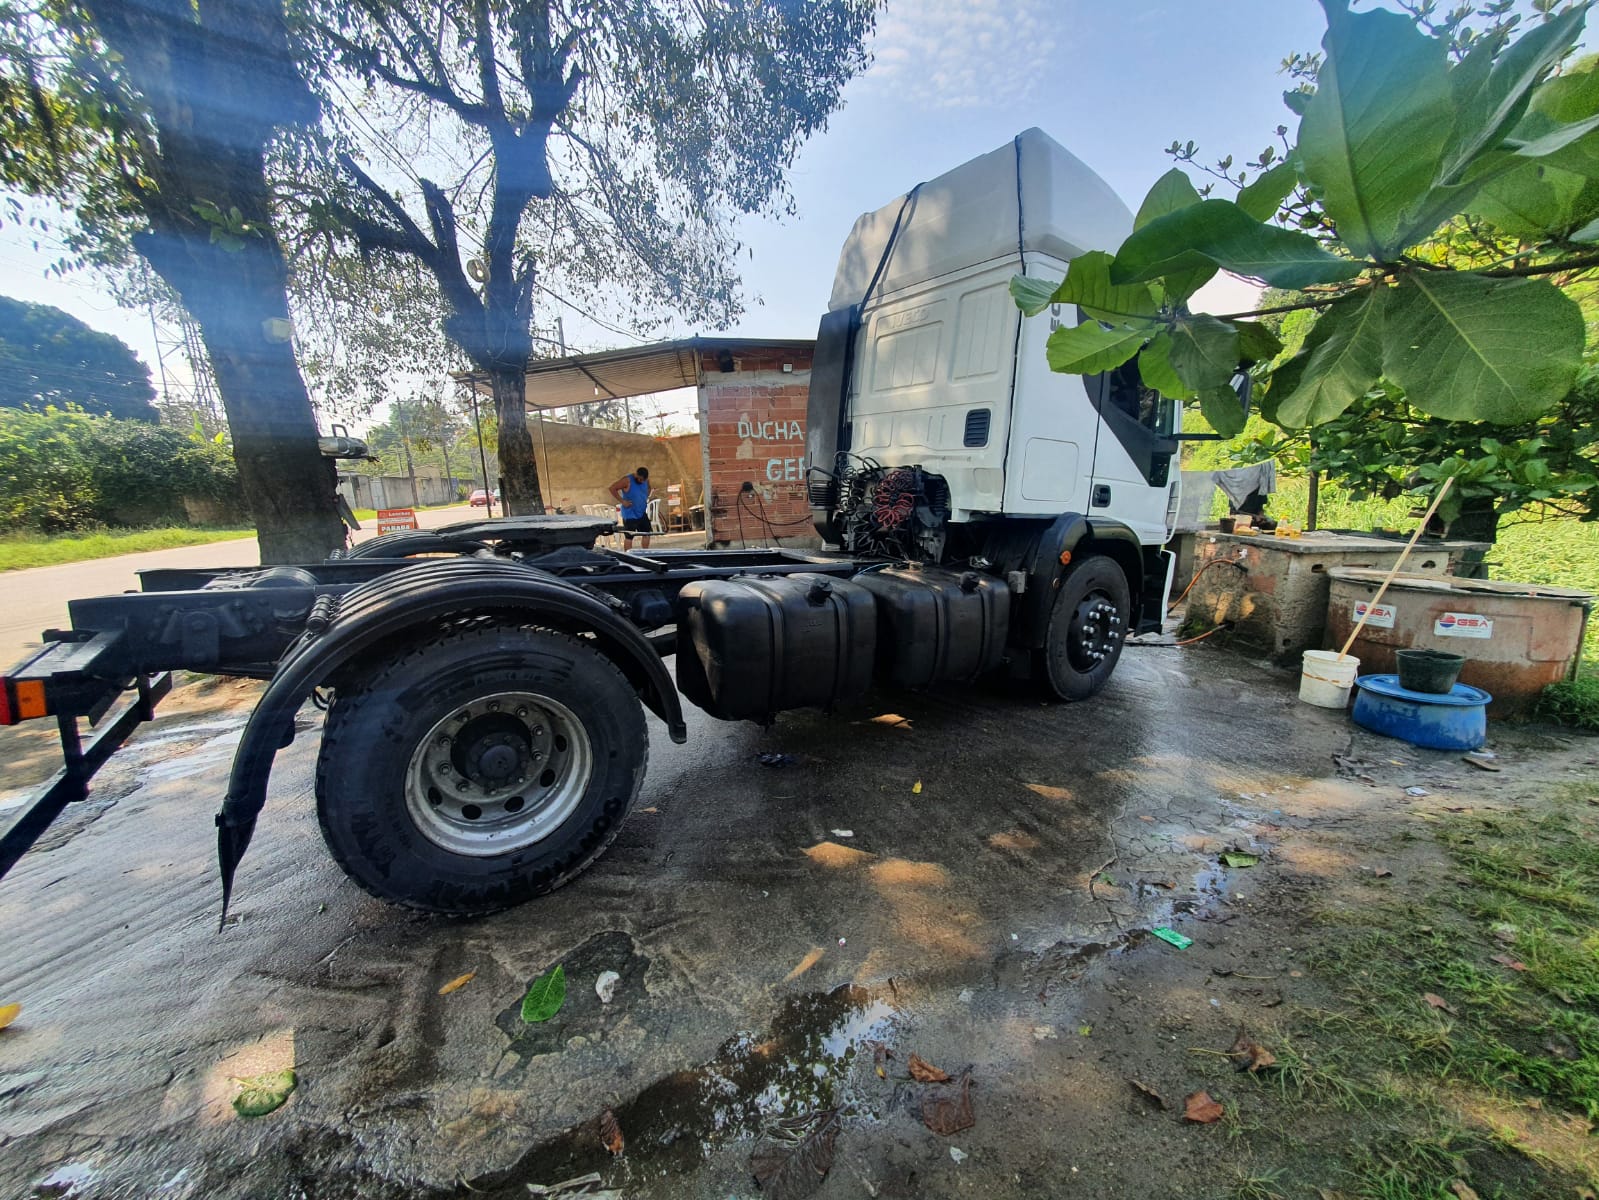 Agentes da polícia ambiental identificam lava jato que operava sem licença em Duque de Caxias após denúncia de contaminação do solo feita ao Linha Verde